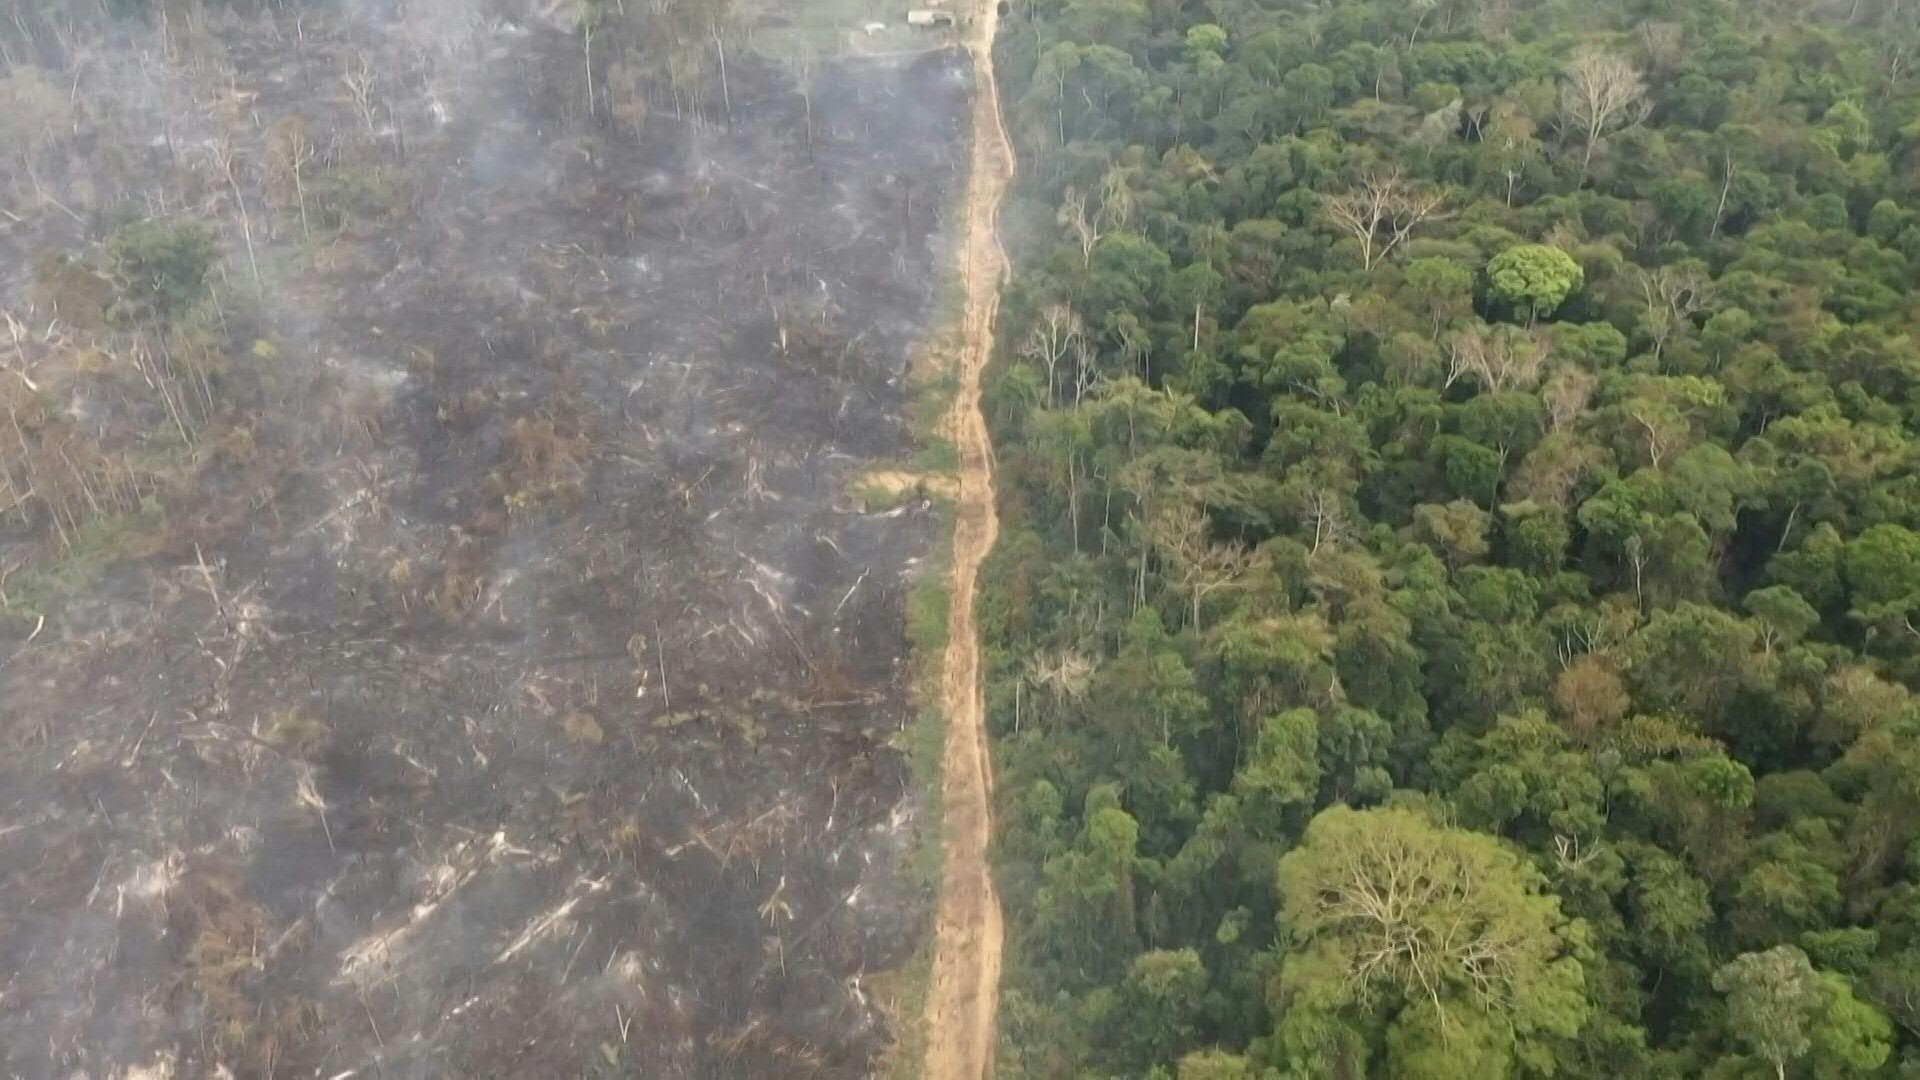 La deforestación en la Amazonía brasileña alcanzó un nuevo récord para un mes de abril, con más de 1.000 km2 talados, equivalente a casi 140.000 campos de fútbol, según datos satelitales divulgados este viernes.